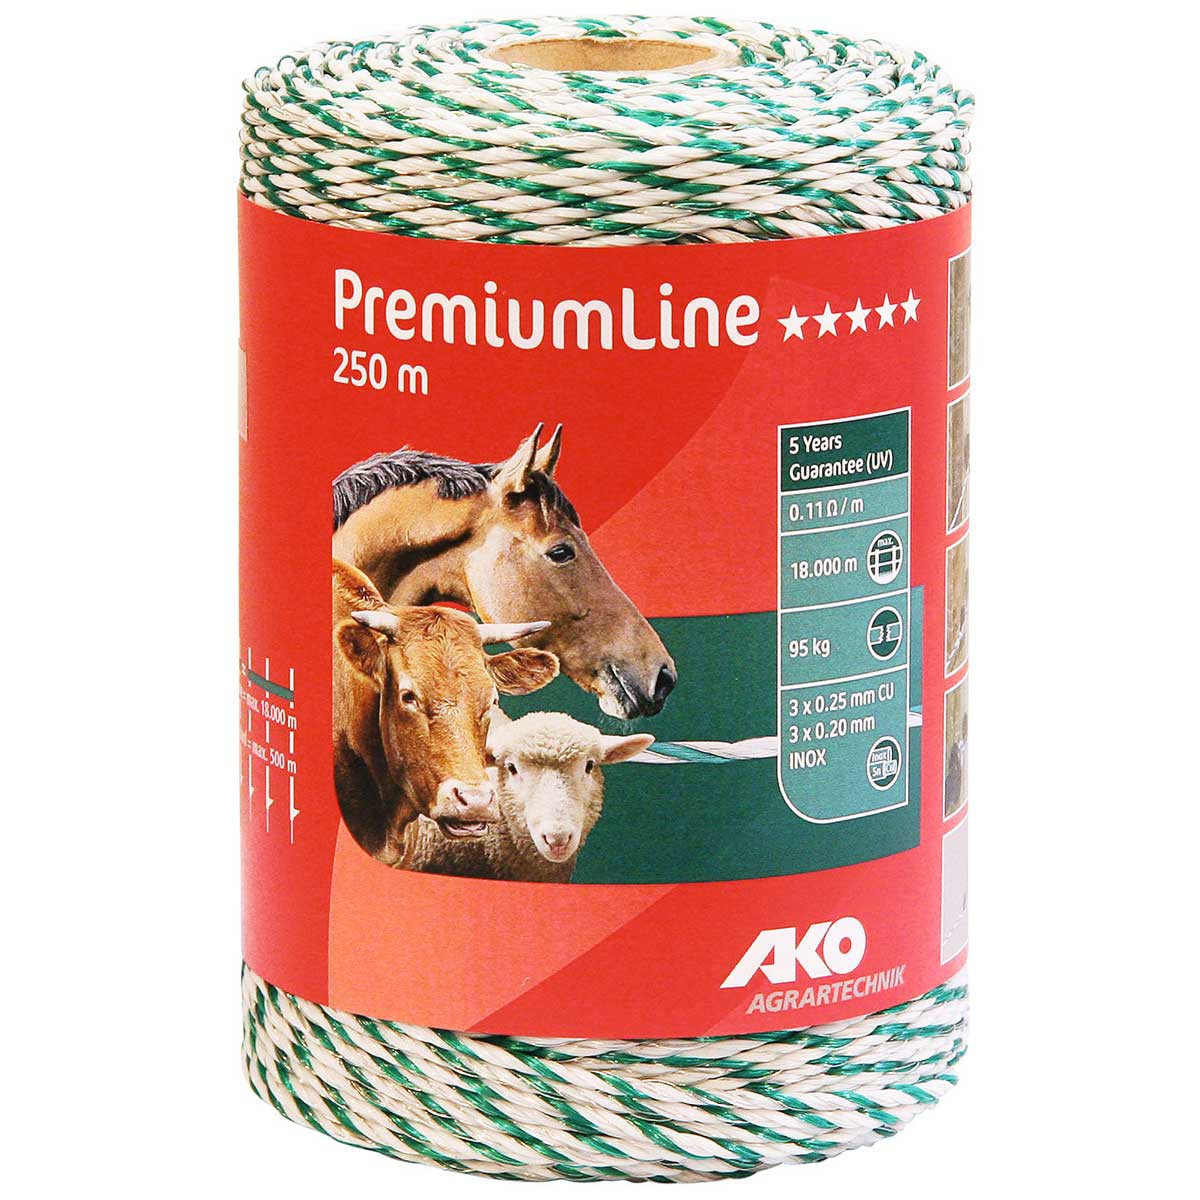 Ako Pasture Fence Polywire PremiumLine 250m, 3x0.20 Niro + 3x0.25 Copper, white-green